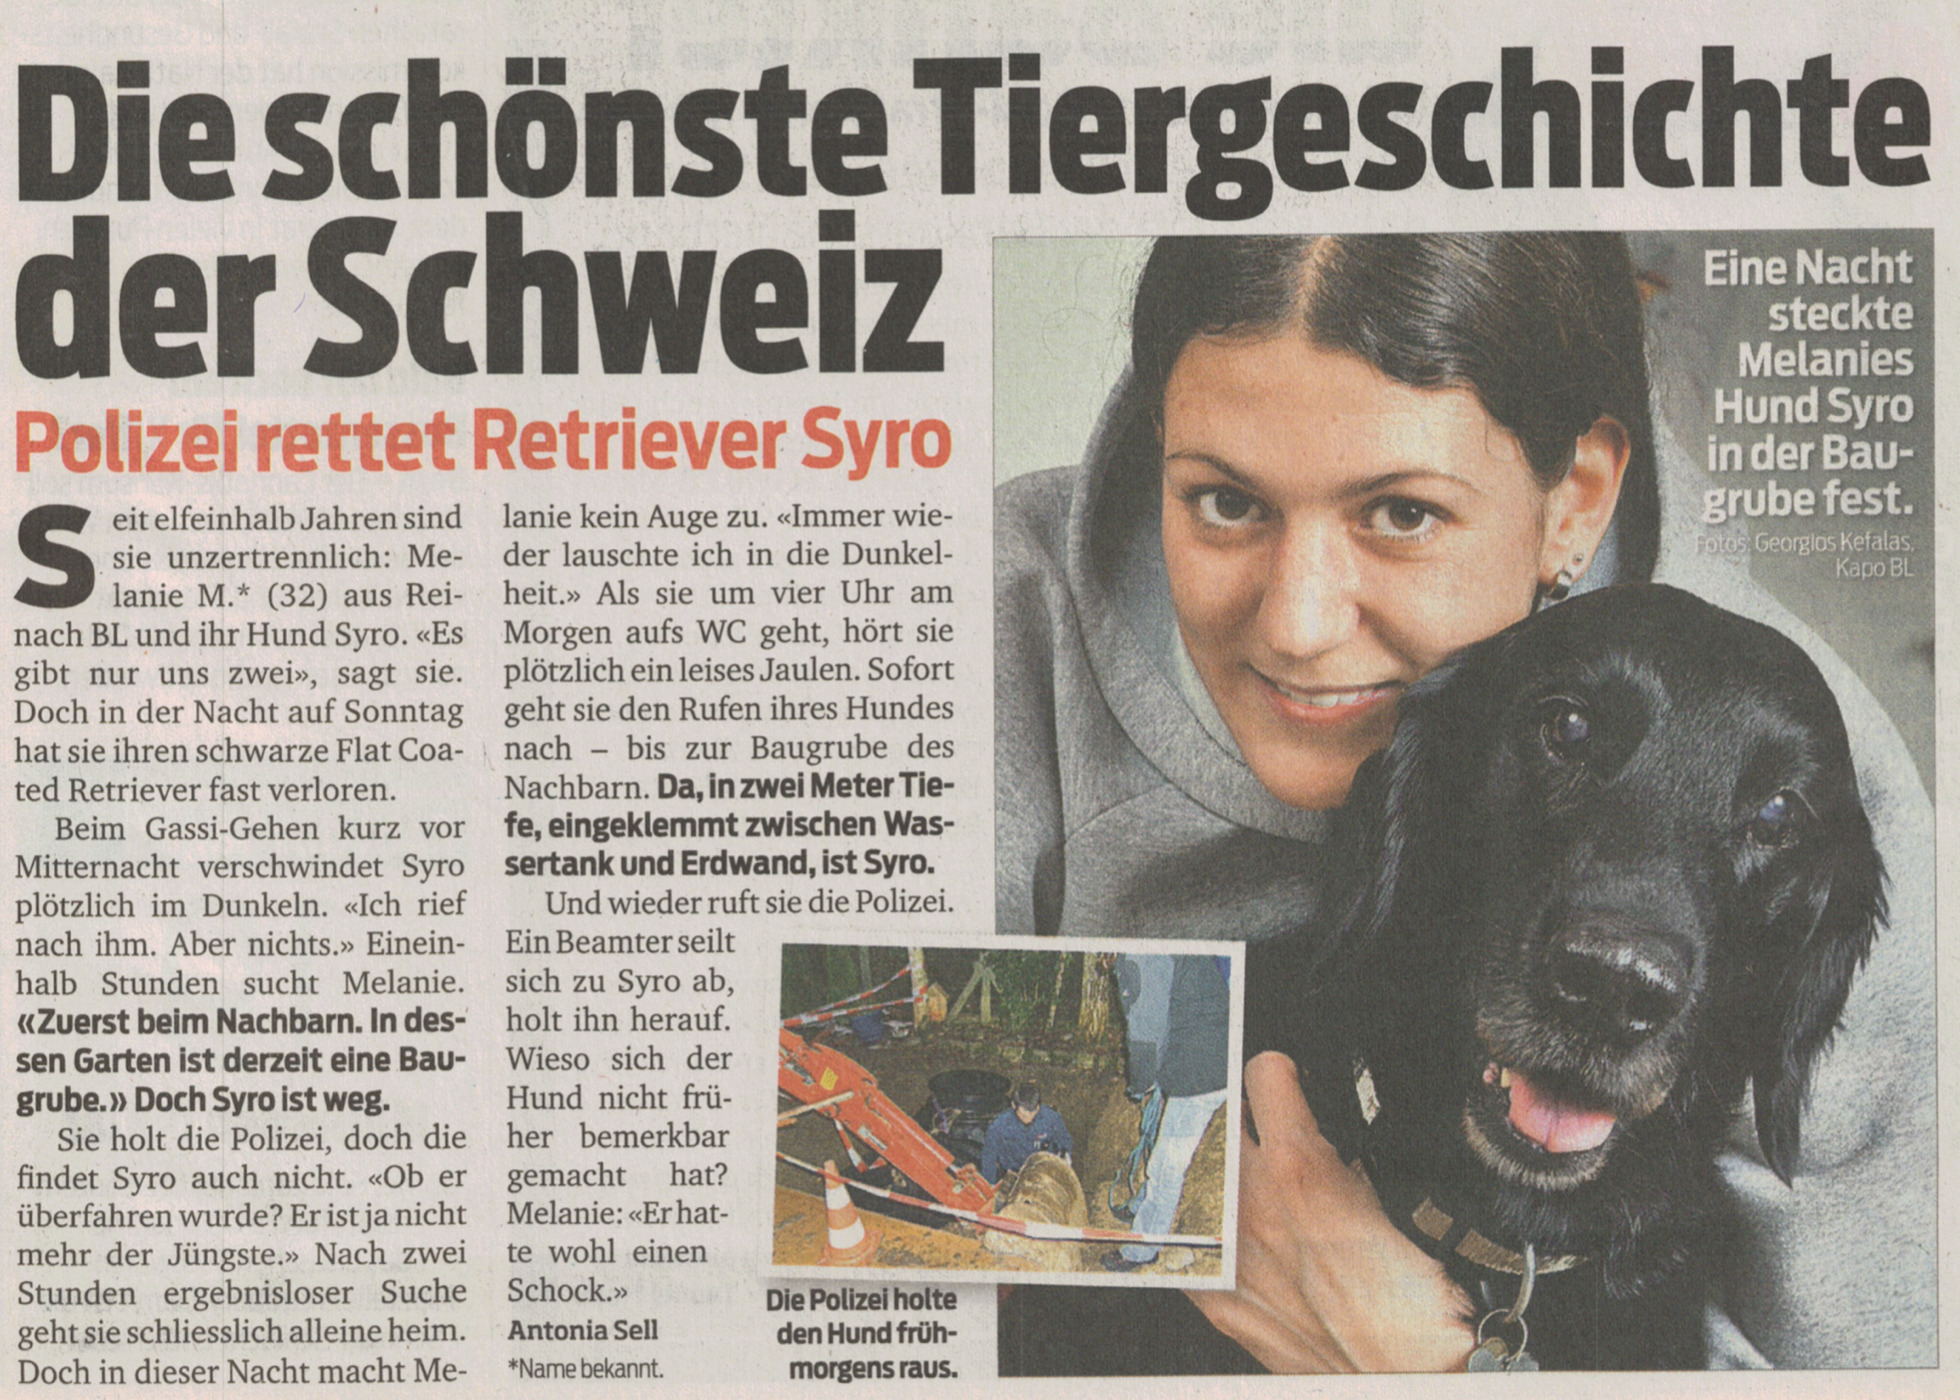 Melanie Müller Quine mit ihrem ersten Hund Syro der in der Nacht in die Baugrube gefallen ist und von der Polizei gerettet wurde